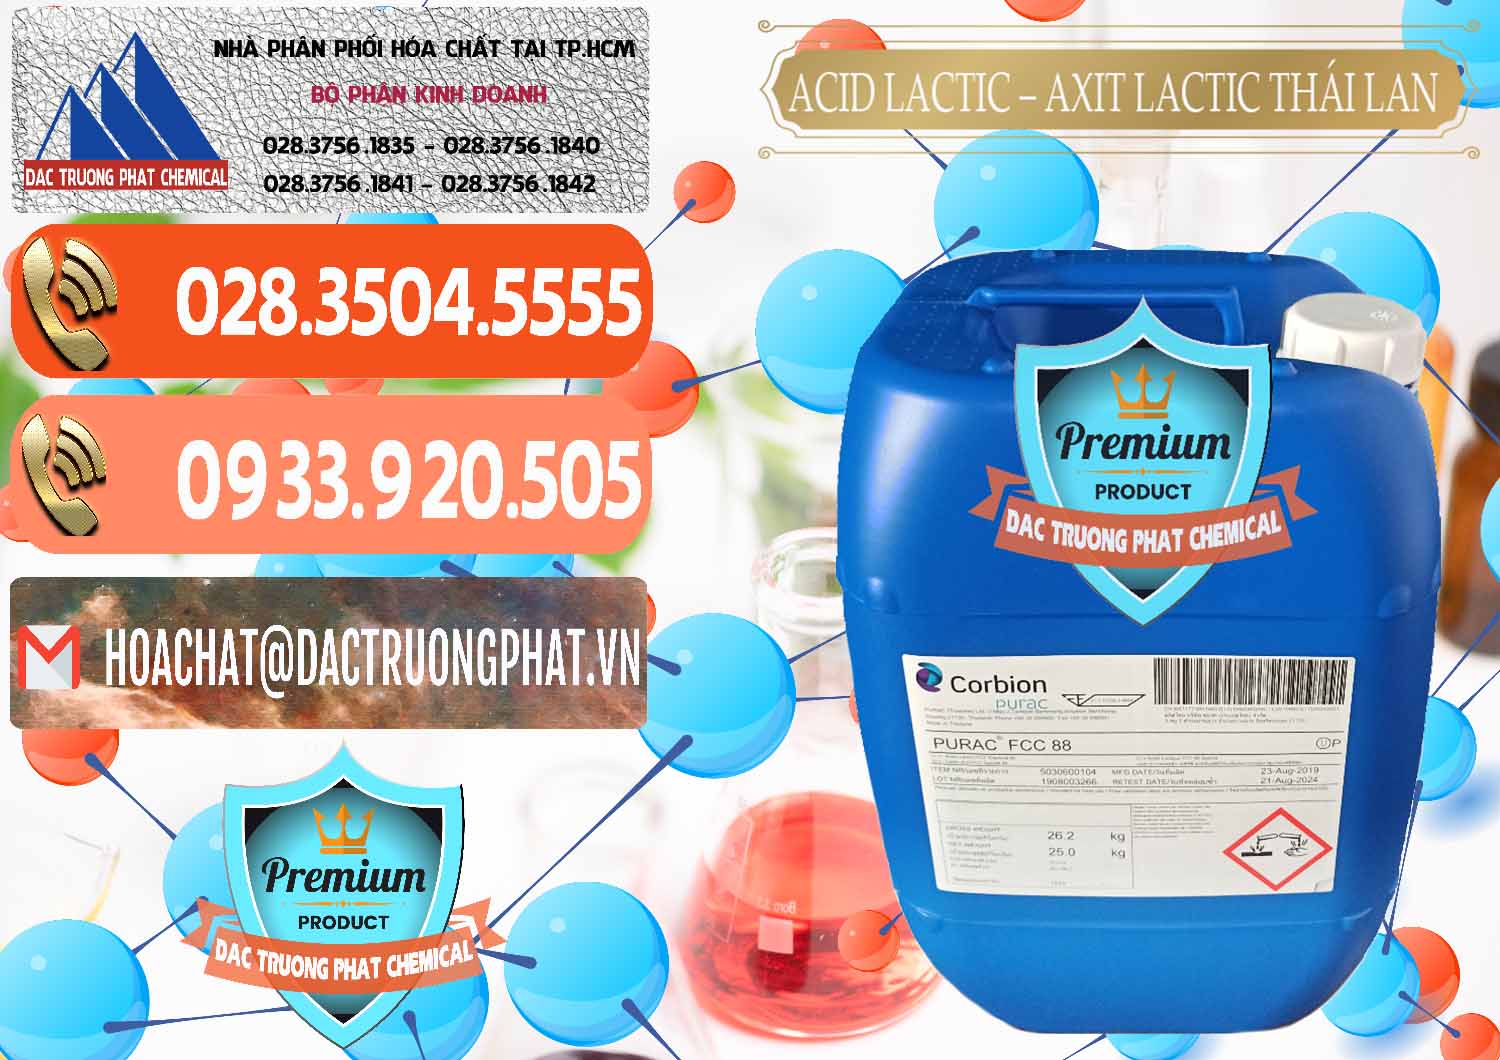 Đơn vị chuyên phân phối & bán Acid Lactic – Axit Lactic Thái Lan Purac FCC 88 - 0012 - Nhà cung cấp & phân phối hóa chất tại TP.HCM - hoachatmientay.com